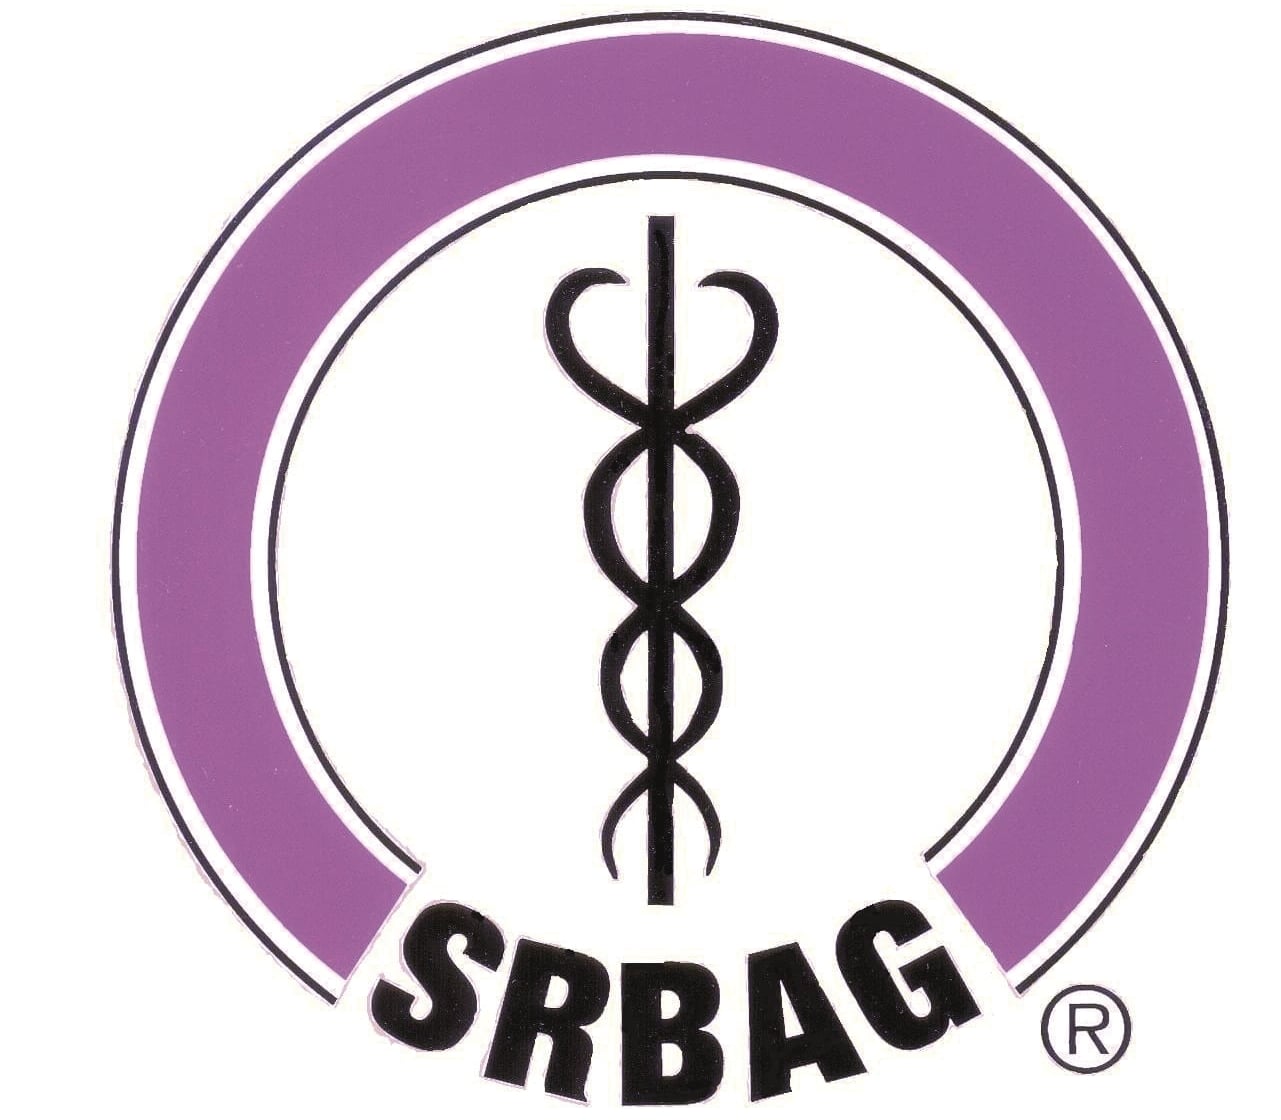 srbag-logo.jpg